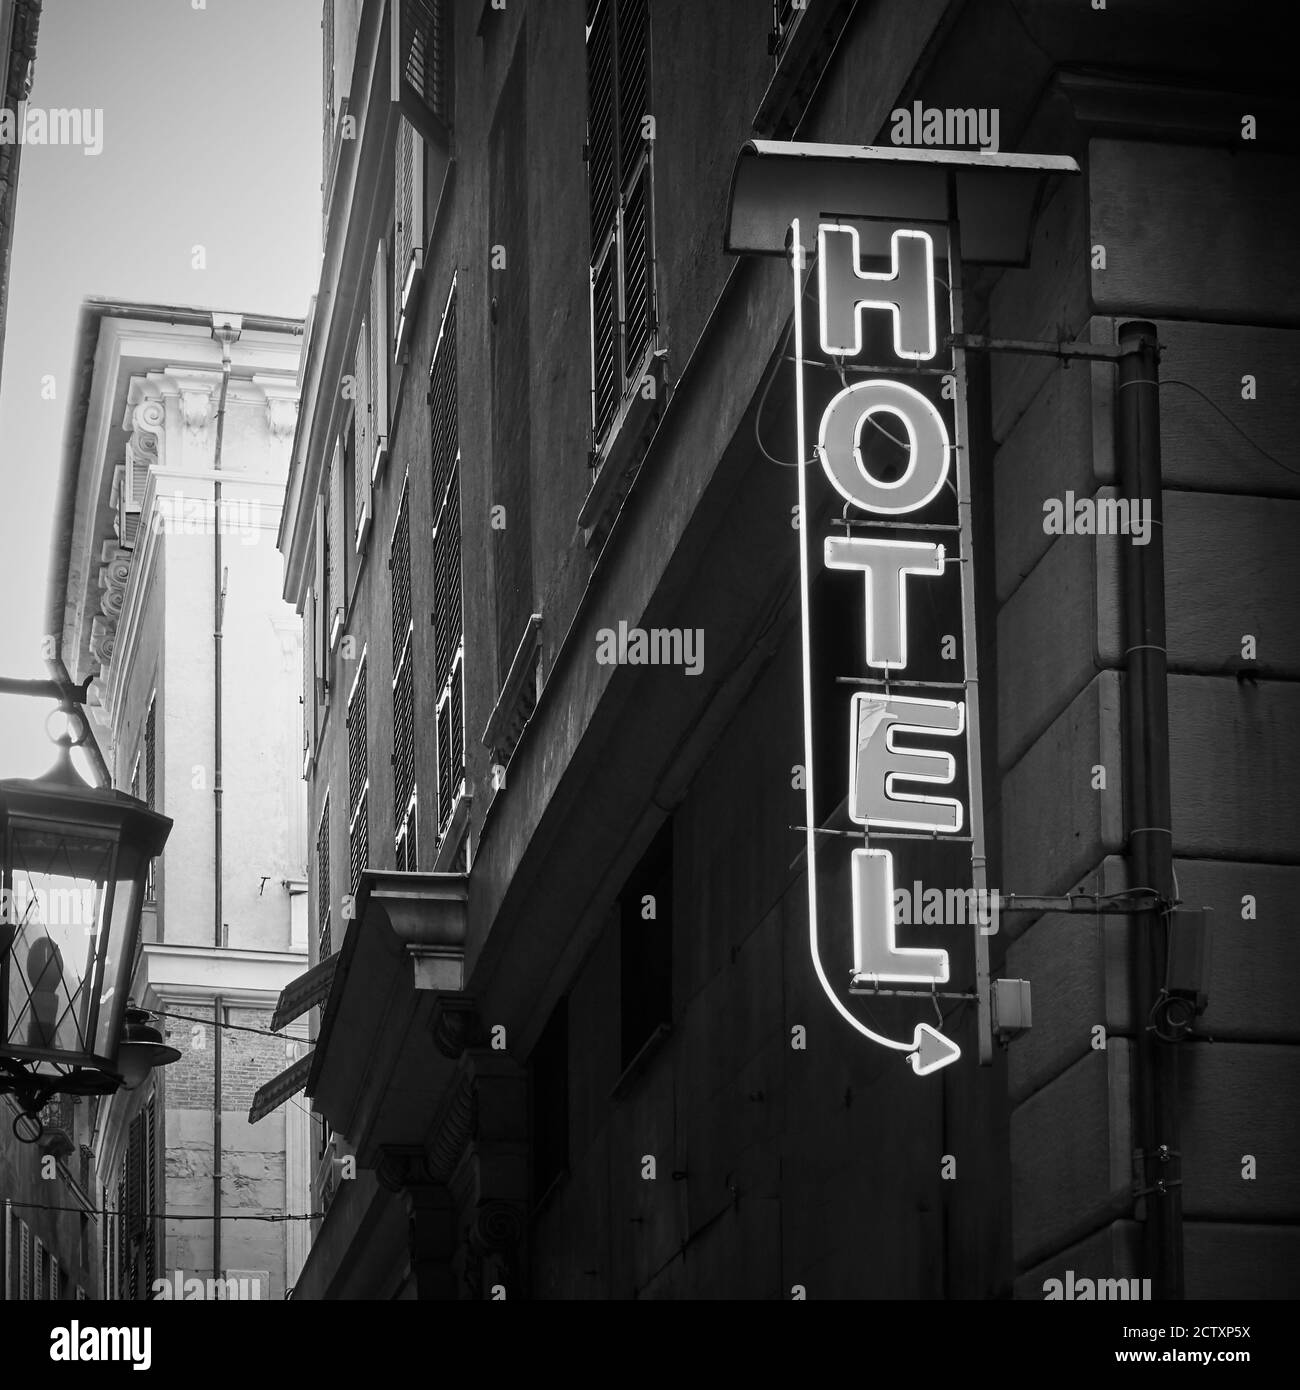 Hotelschild an der Wand. Schwarzweiß-Fotografie, Stadtbild Stockfoto